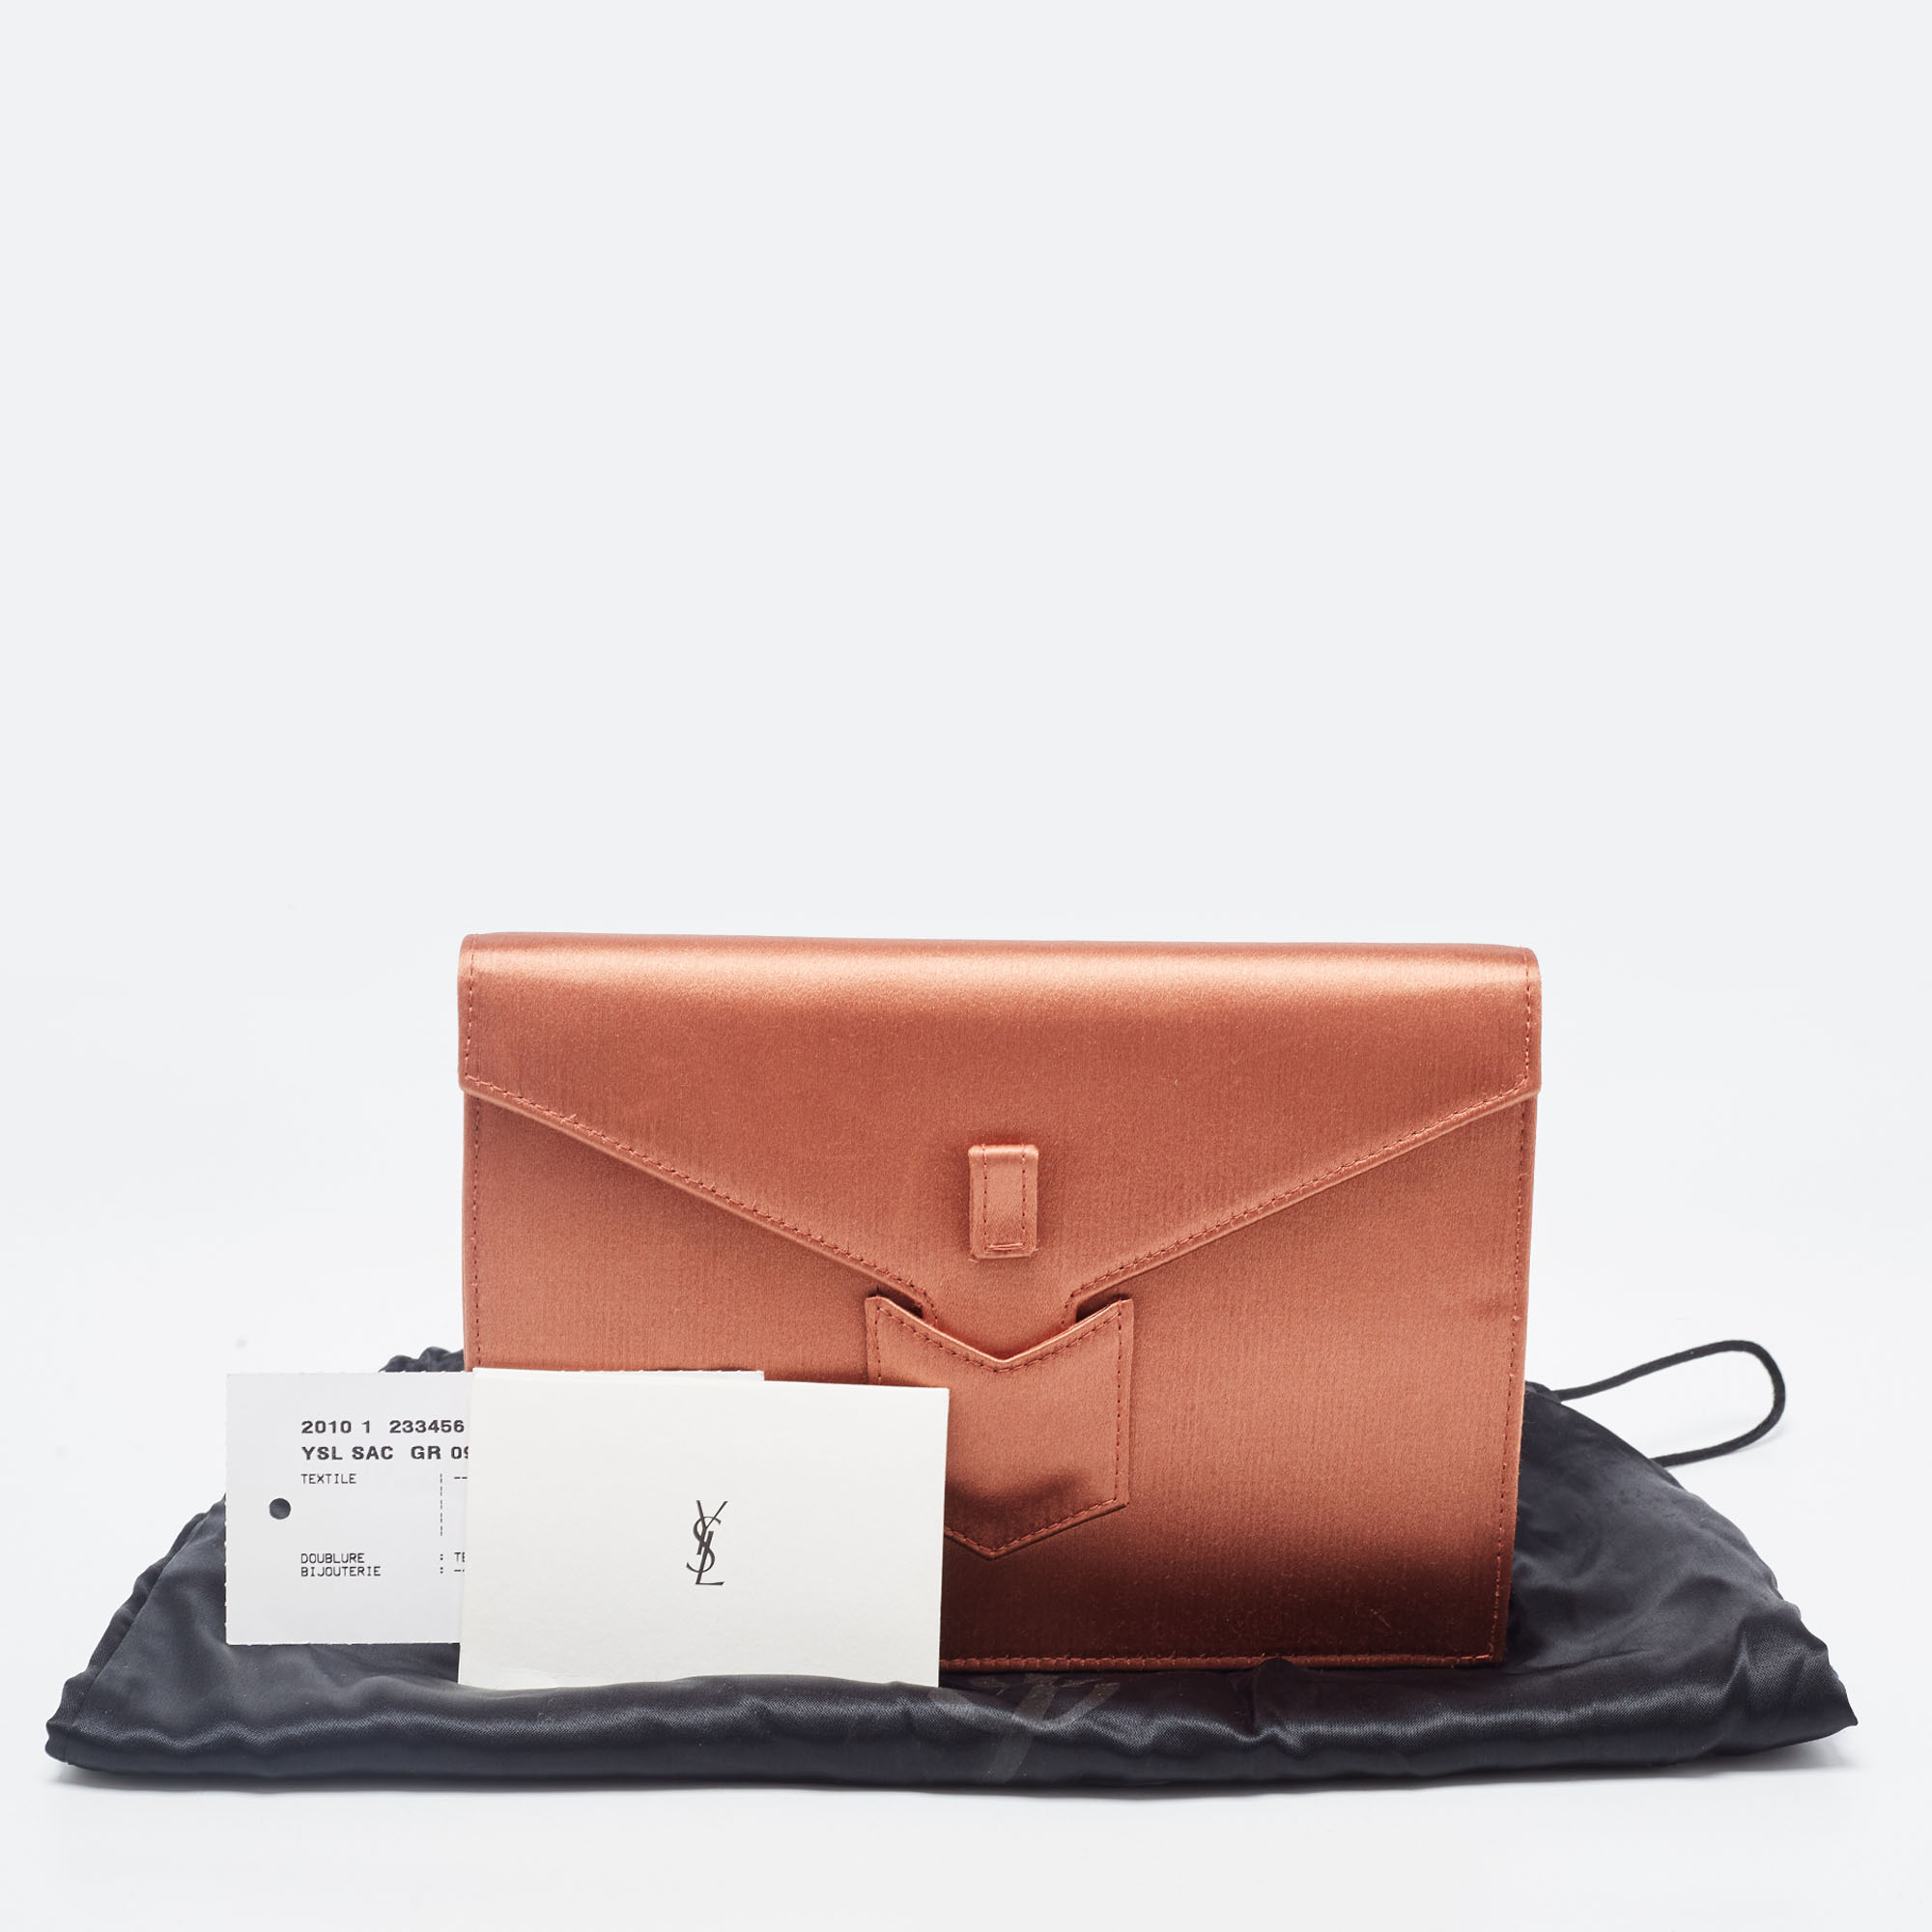 Yves Saint Laurent Copper Satin Envelope Flap Clutch